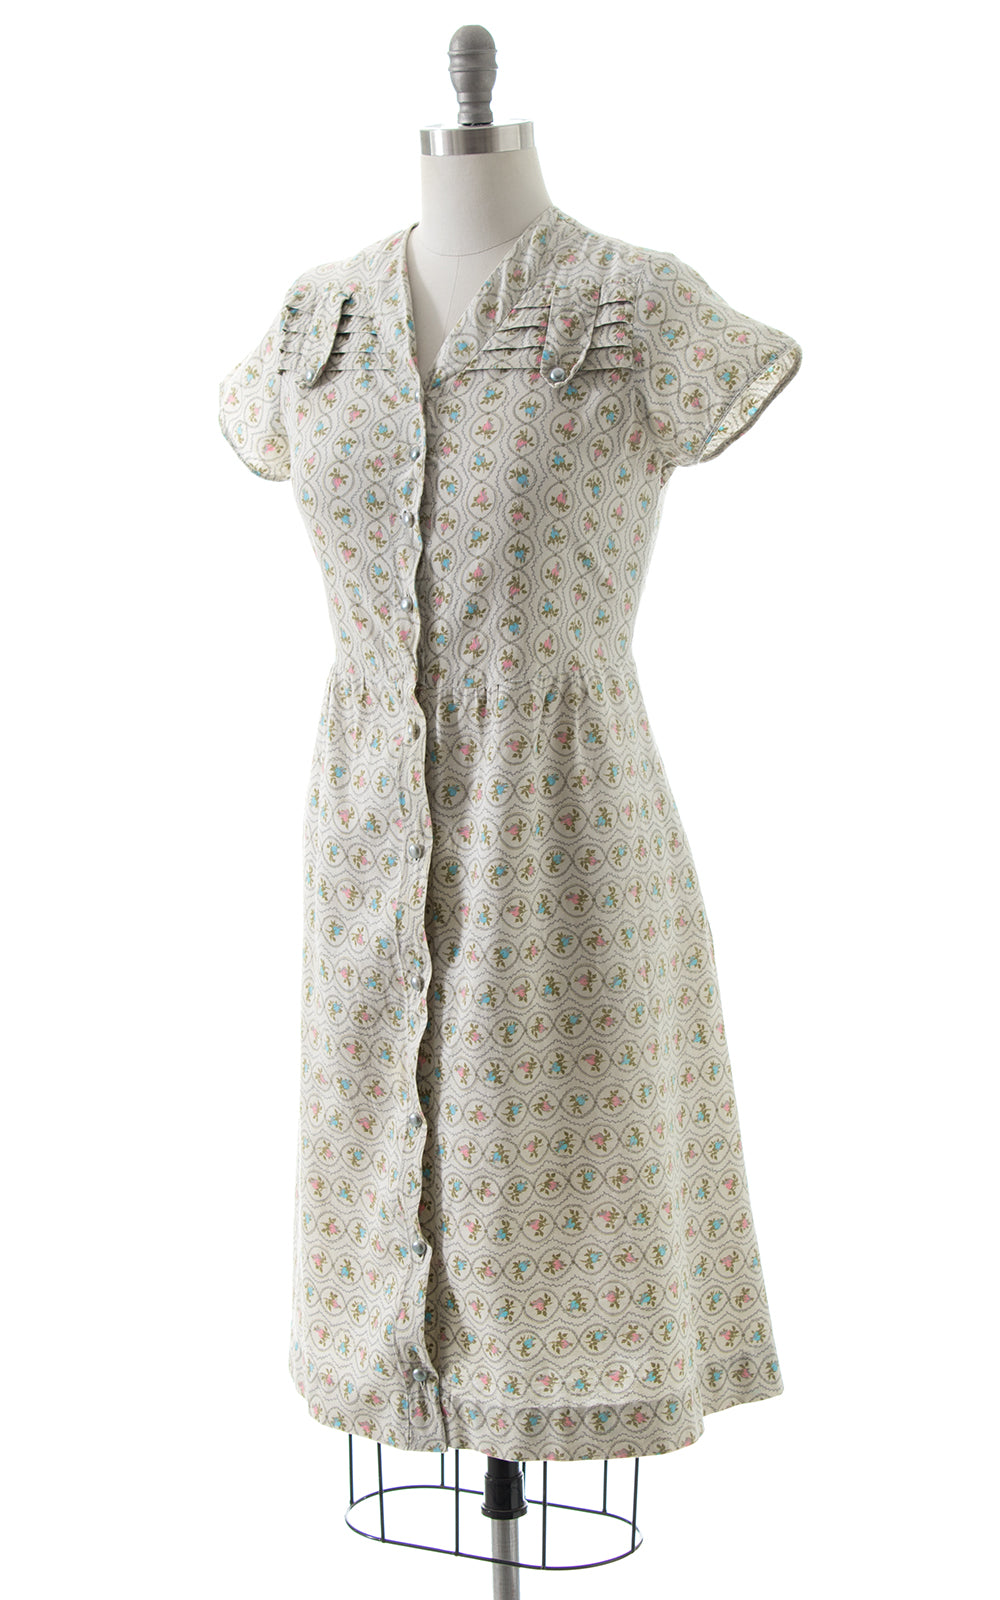 1940s Rosette Shirtwaist Dress